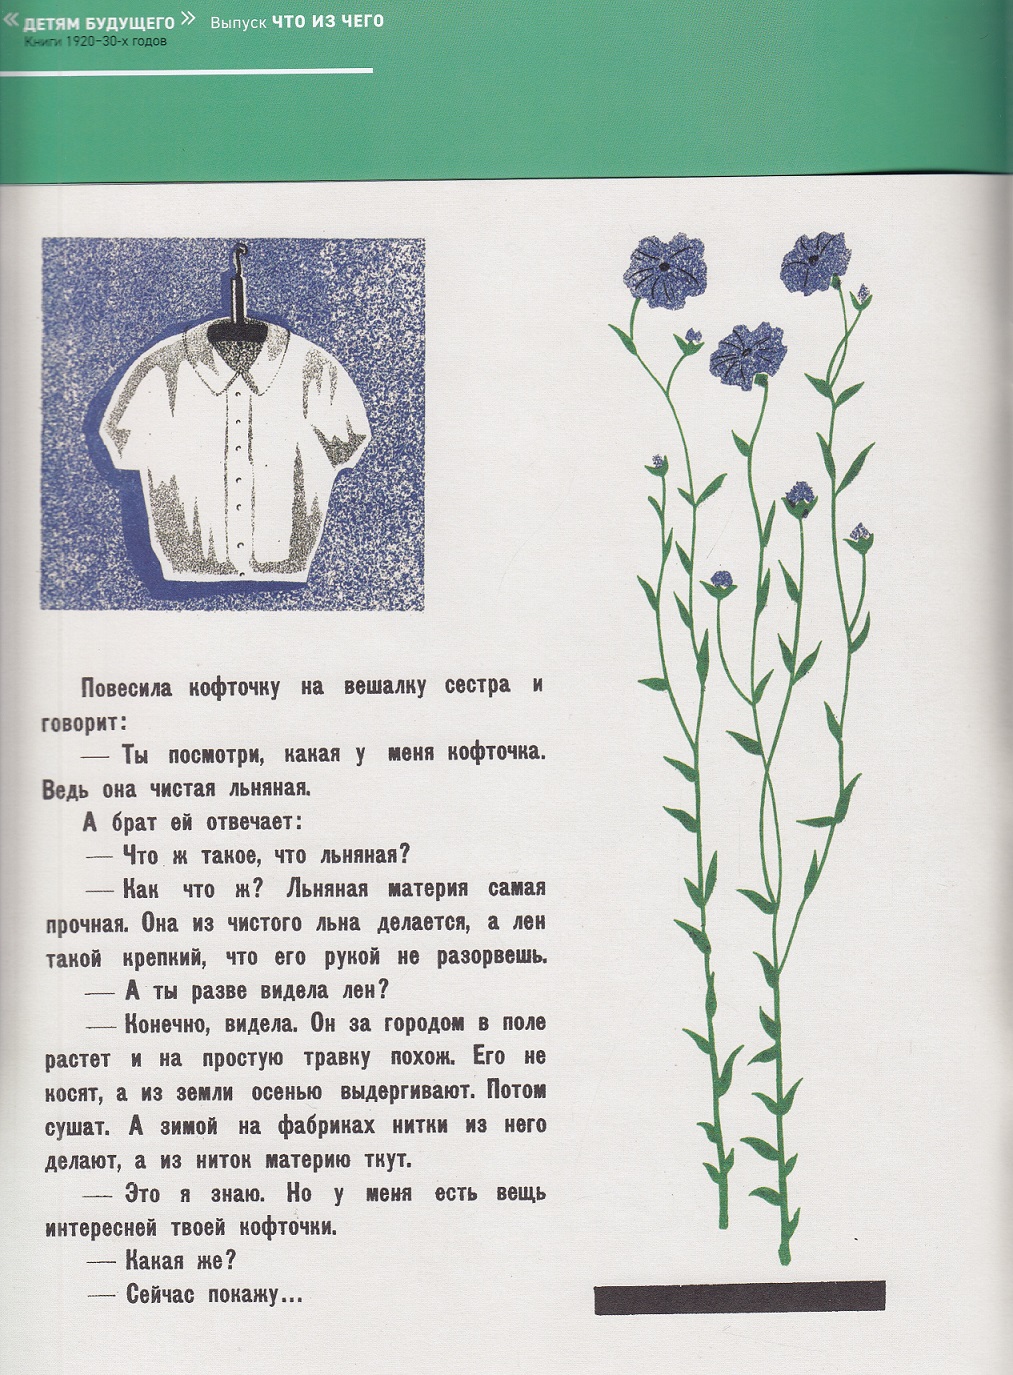 Нажмите для увеличения. «Что из чего» Н. Г. Смирнов (фото книги из фонда библиотеки) 